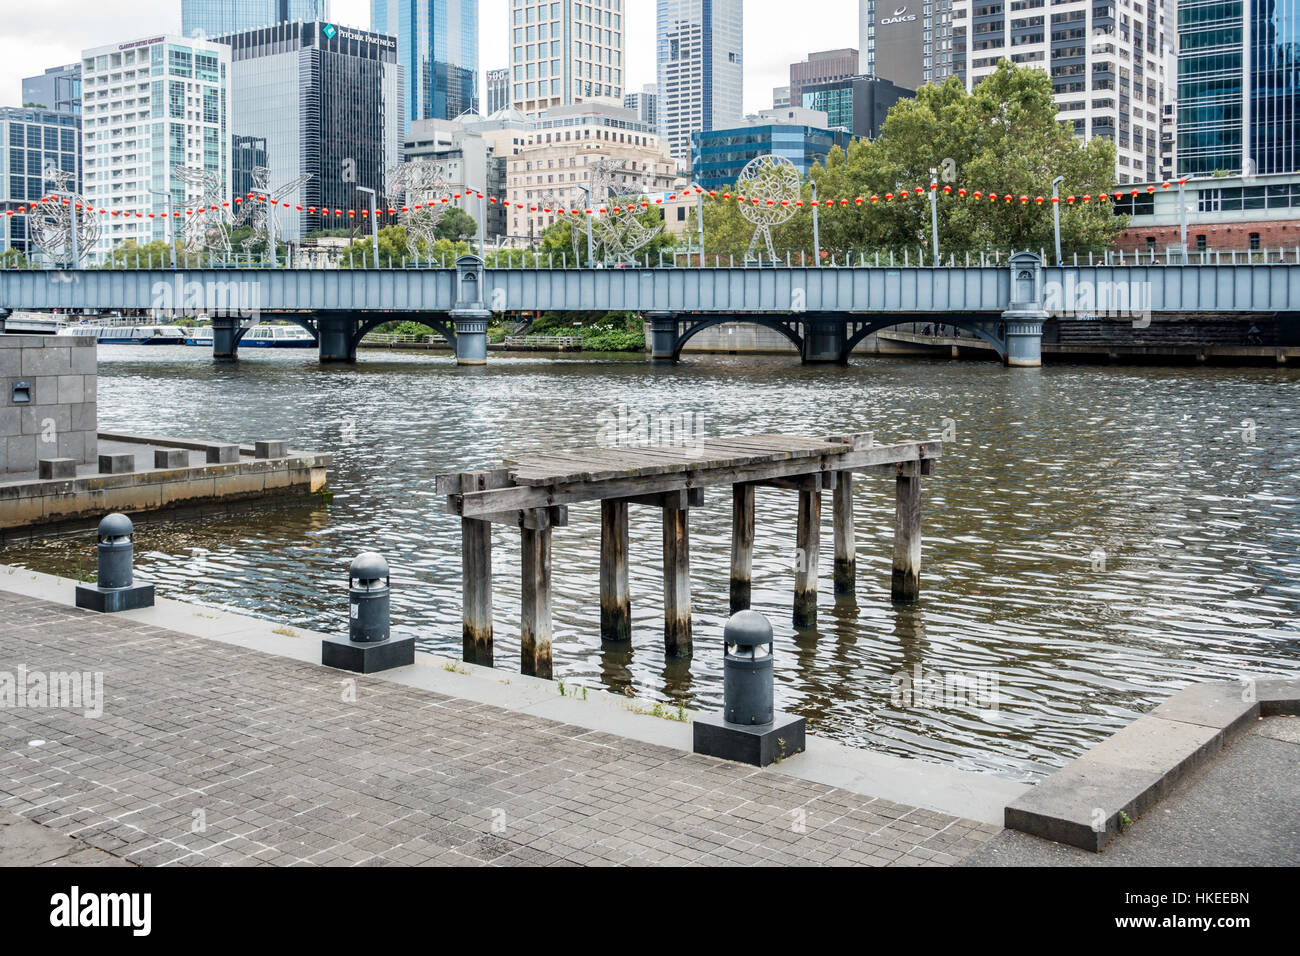 Quai de délabrement moderne contraste avec la promenade Southbank, Melbourne, Victoria, Australie. Banque D'Images